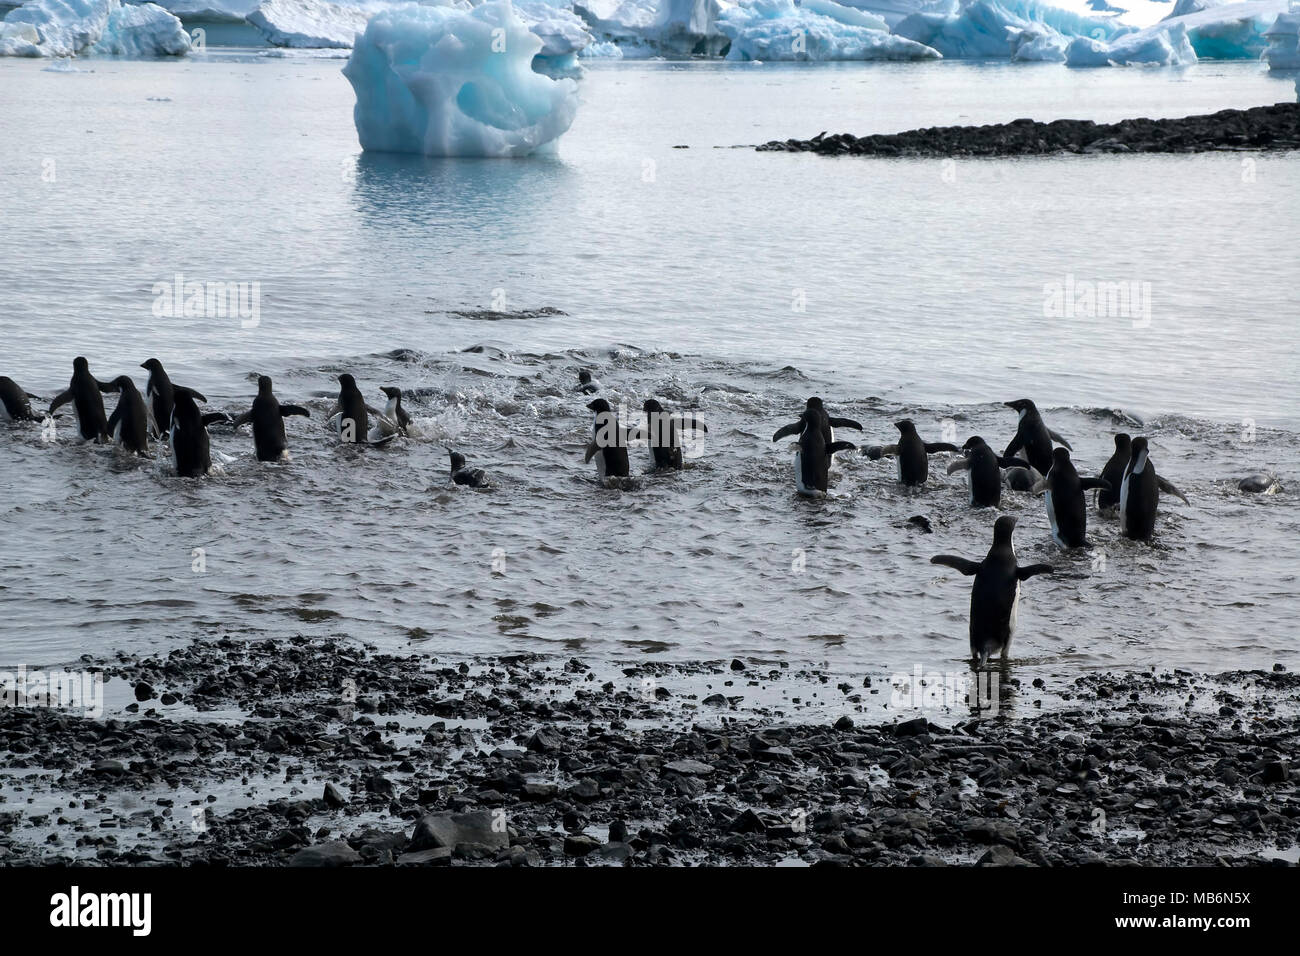 L'Antarctique l'Île du Diable, groupe de manchots adélies entrant dans l'eau à partir de la plage de galets Banque D'Images